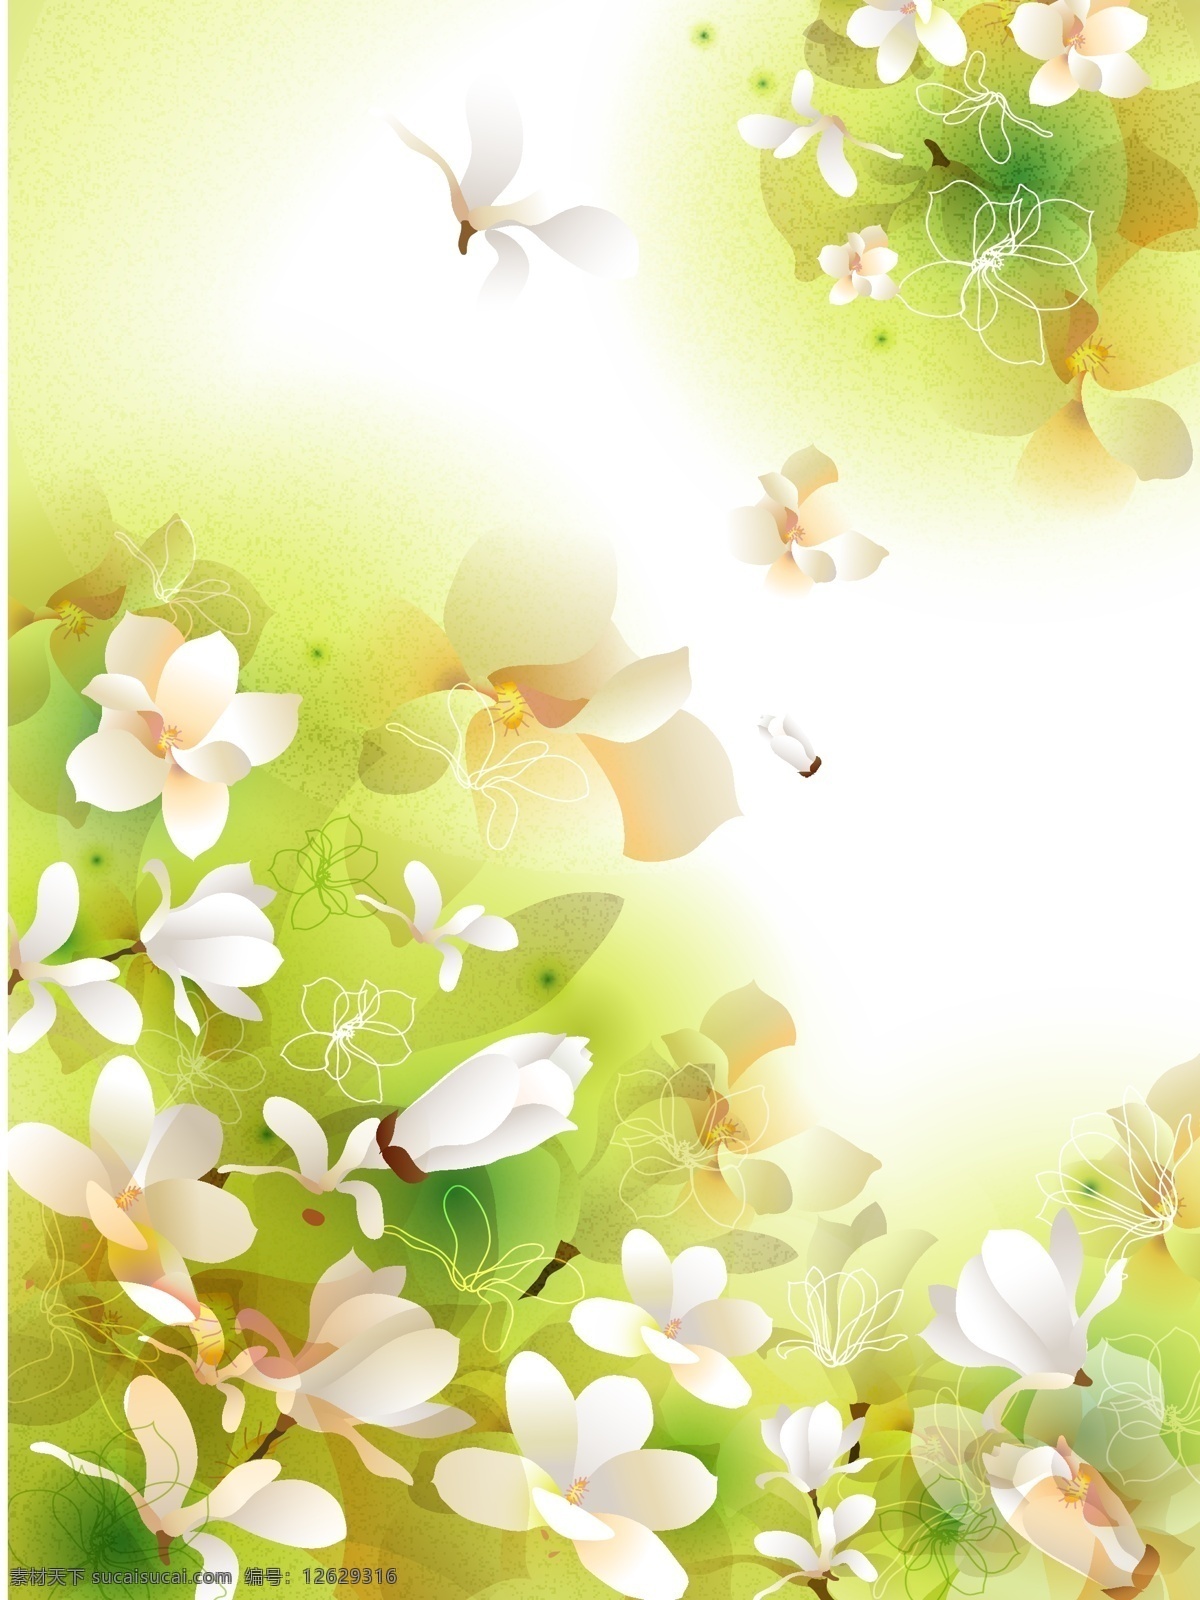 皱叶木兰 木兰花 花卉矢量图 设计素材 包装素材 时尚花纹 生物世界 花草